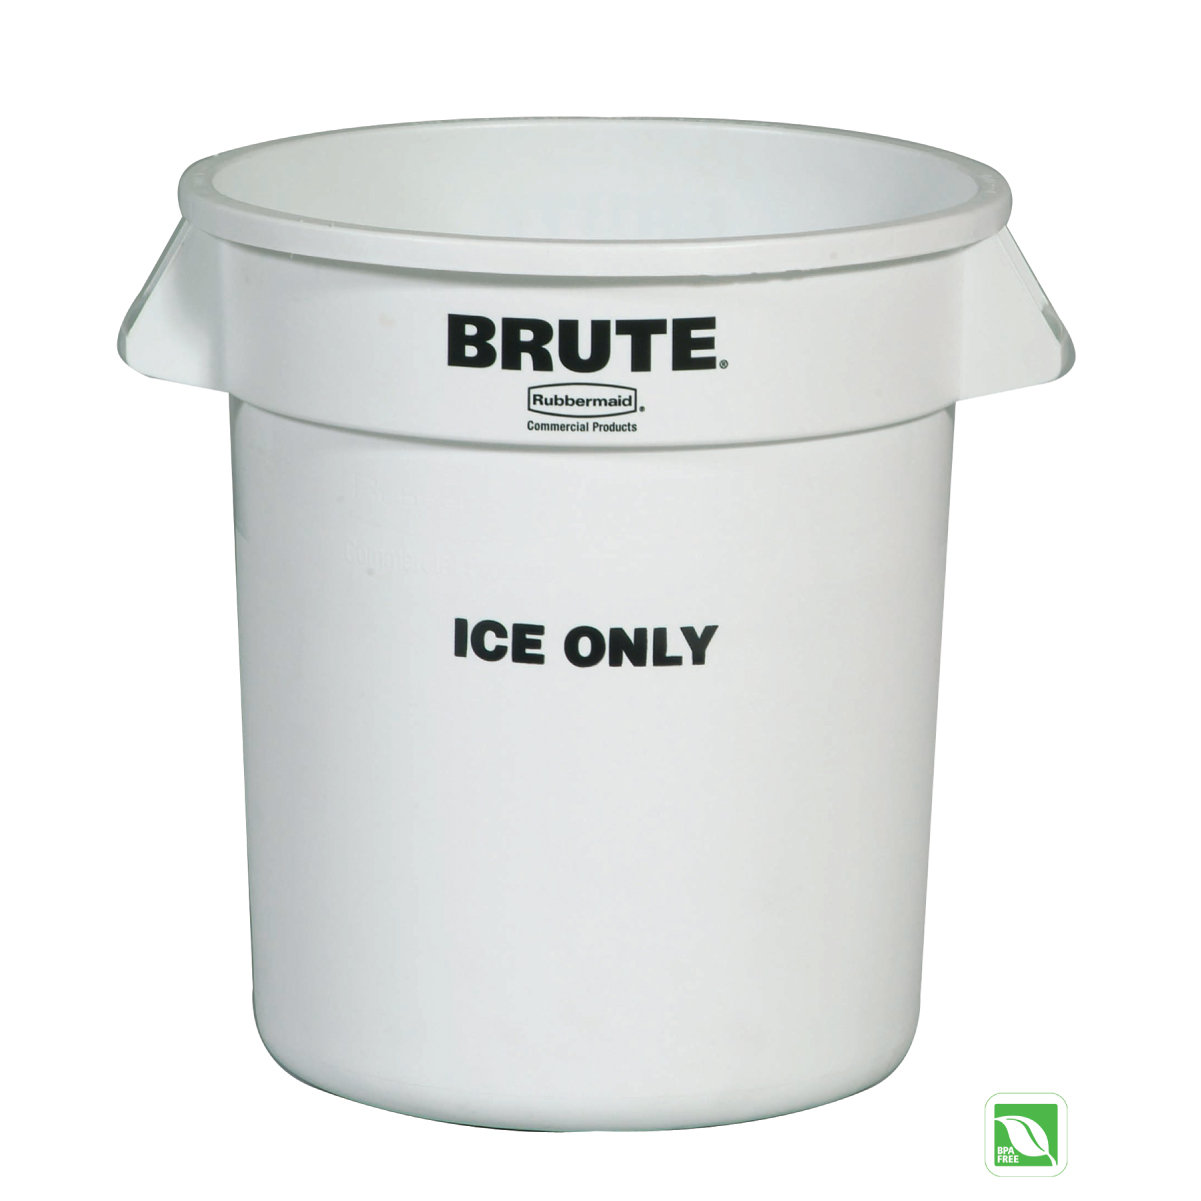 ถังน้ำแข็ง BRUTE® ขนาด 10 Gal สีขาว